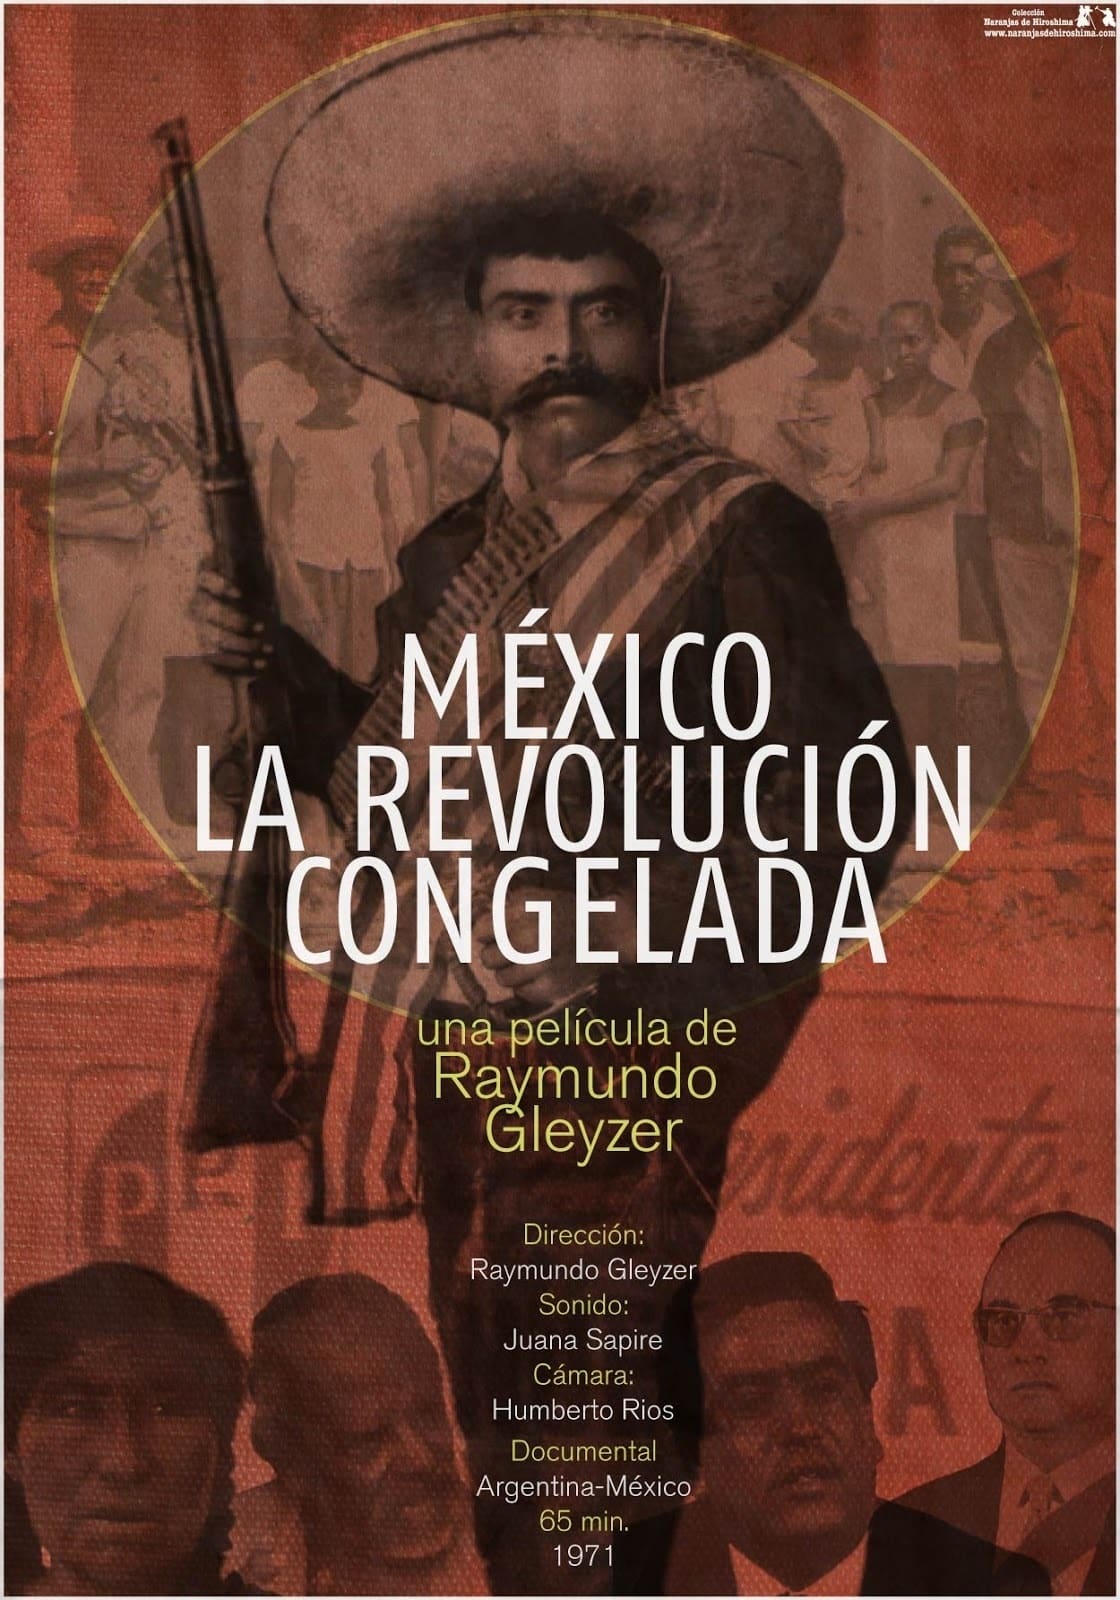 Mexico: The Frozen Revolution